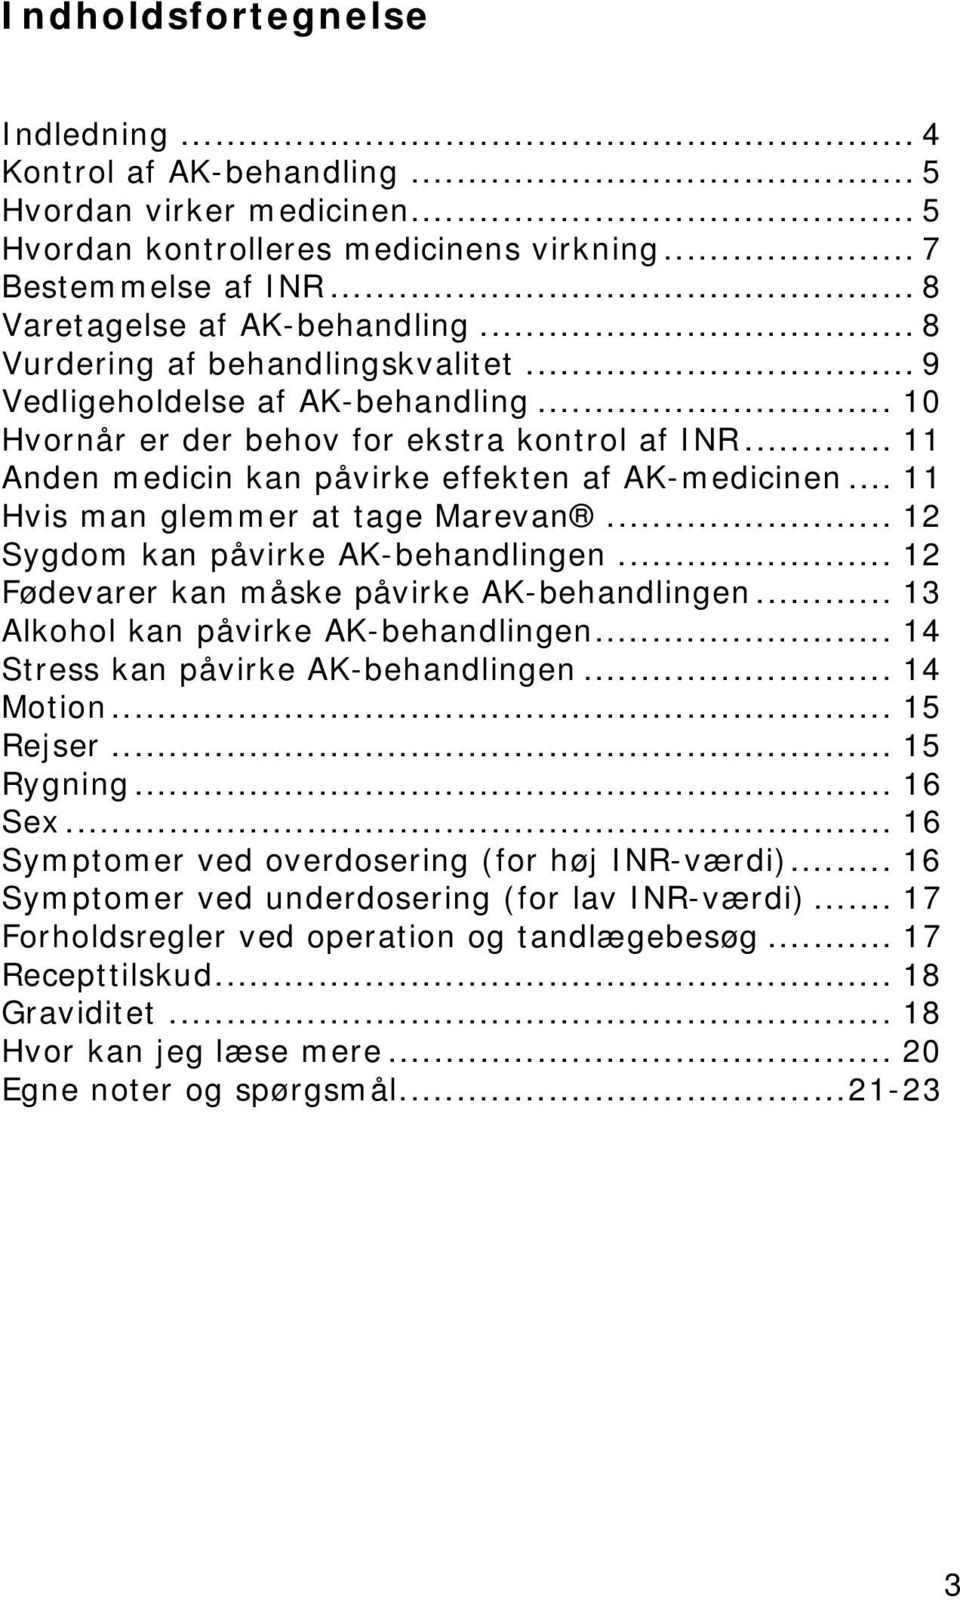 .. 11 Hvis man glemmer at tage Marevan... 12 Sygdom kan påvirke AK-behandlingen... 12 Fødevarer kan måske påvirke AK-behandlingen... 13 Alkohol kan påvirke AK-behandlingen.